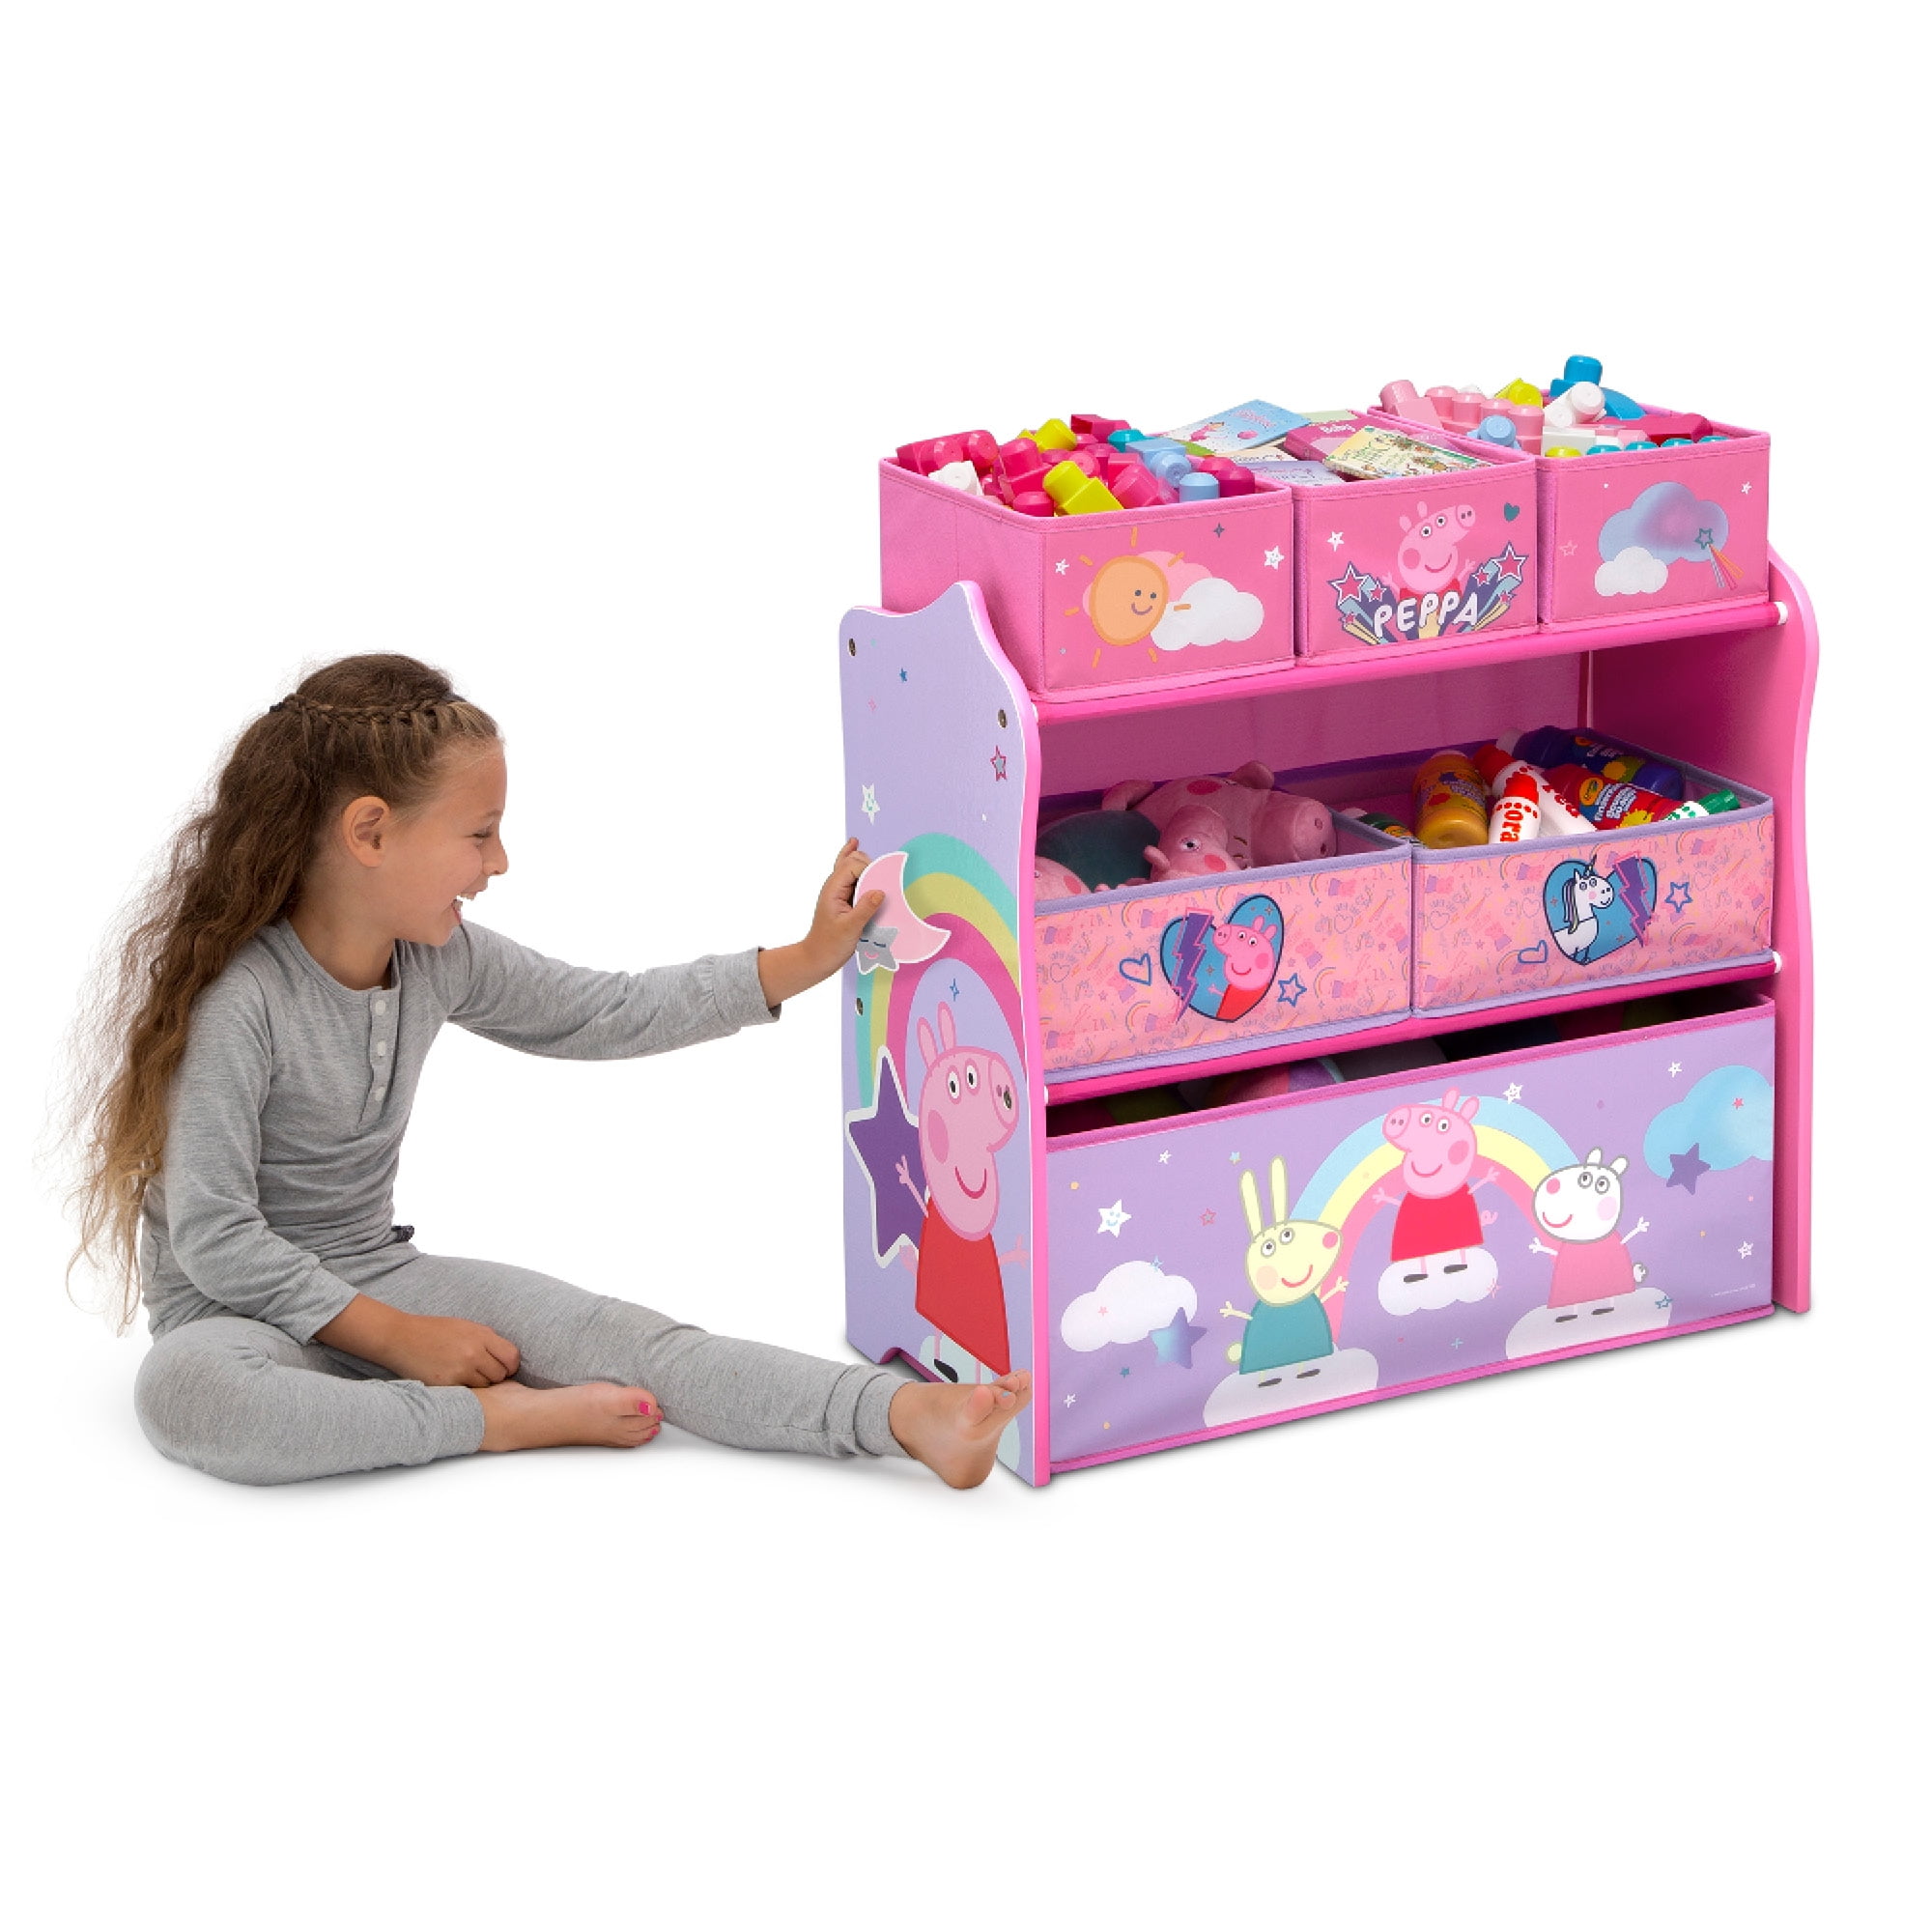 Peppa Pig 6 Bin Design and Store Toy Organizer by Delta Children -  Walmart.com